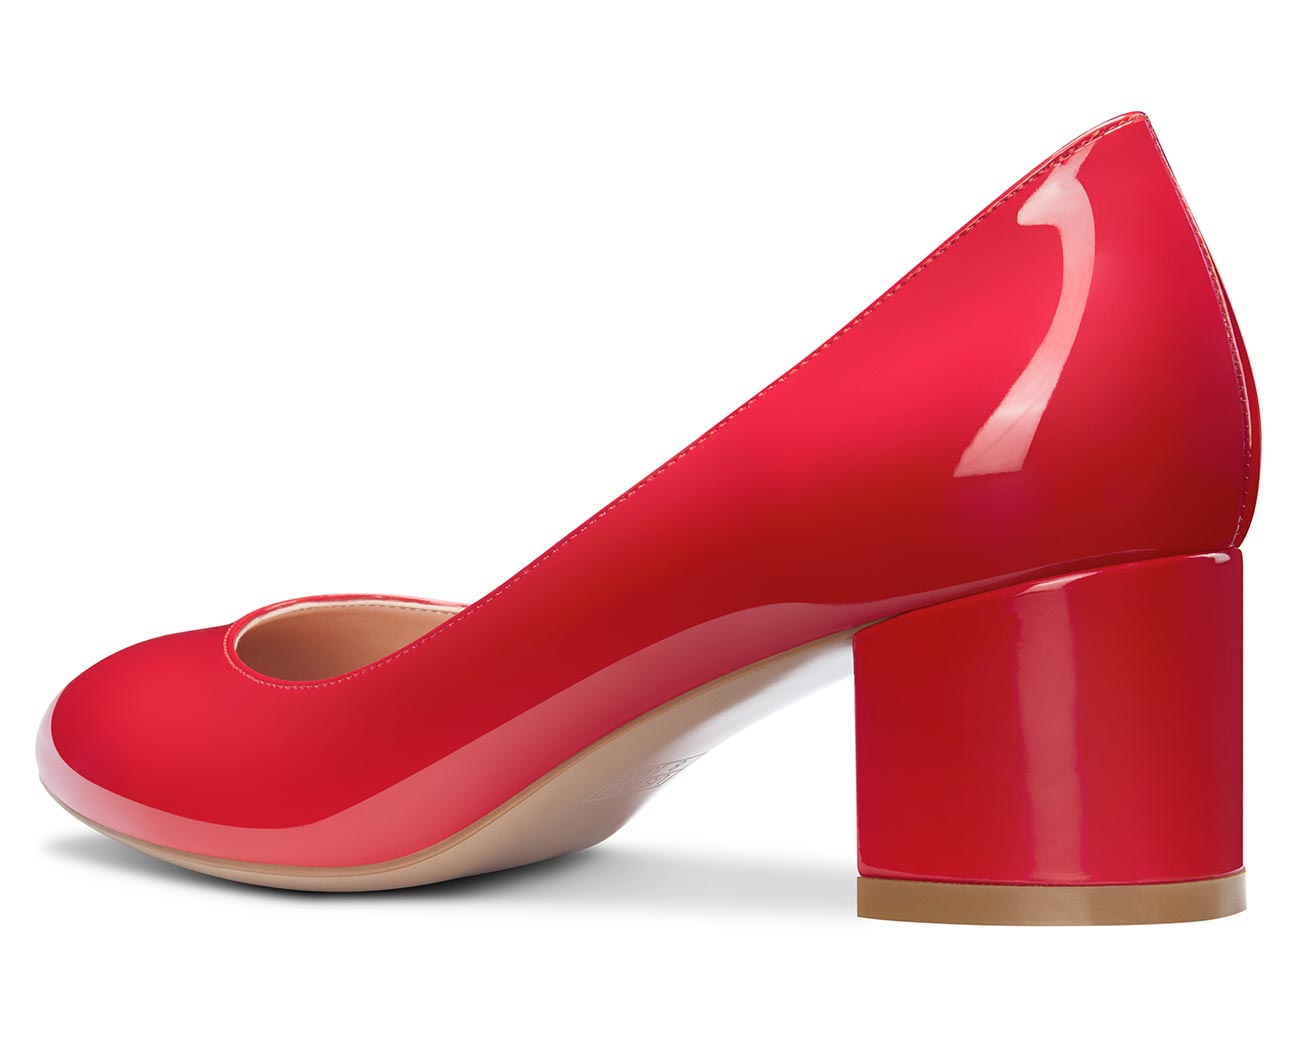 Red suede wide heel pumps ALMA